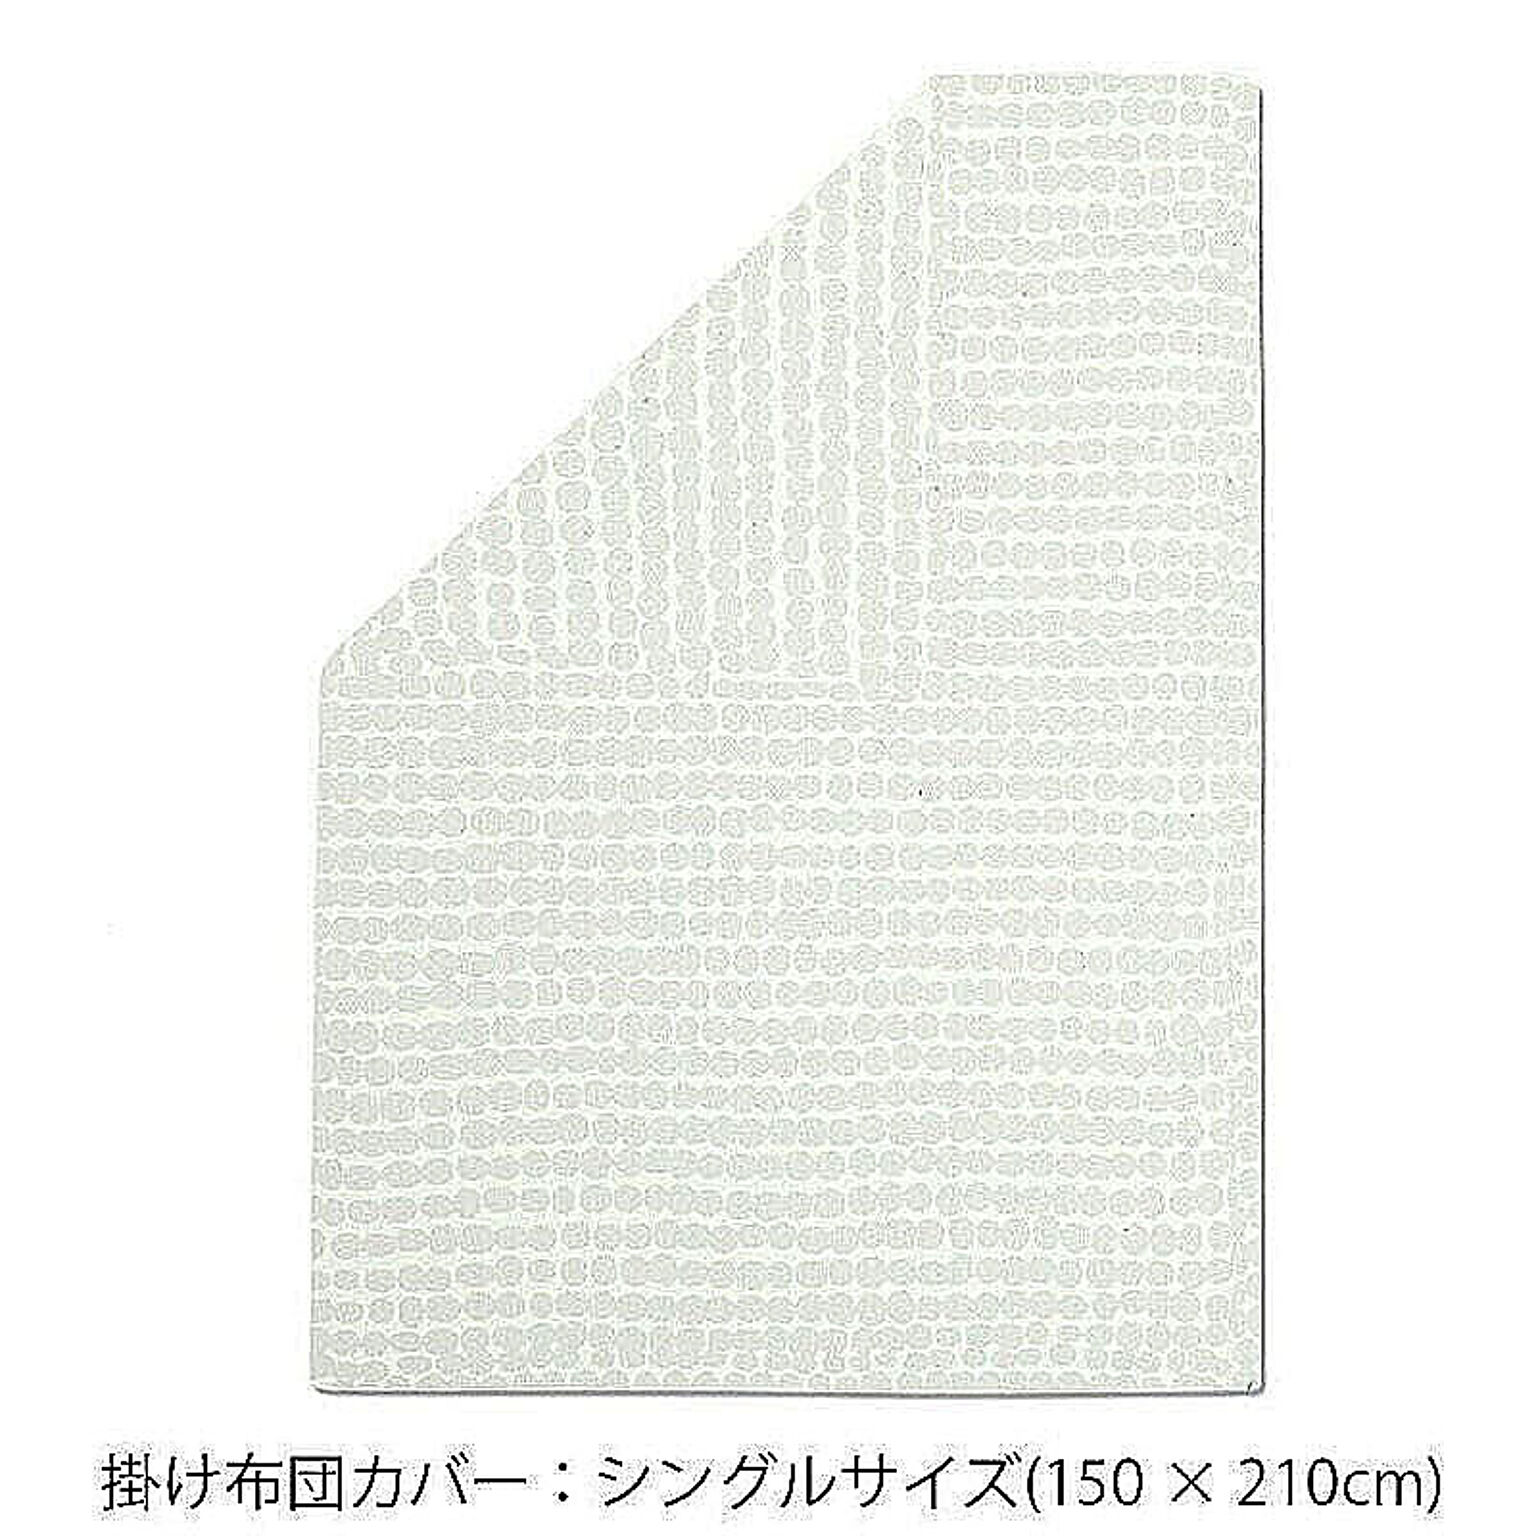 マリメッコ ラシィマット 布団カバー(デュベカバー) 150x210cm(シングルサイズ) ホワイト marimekko RASYMATTO